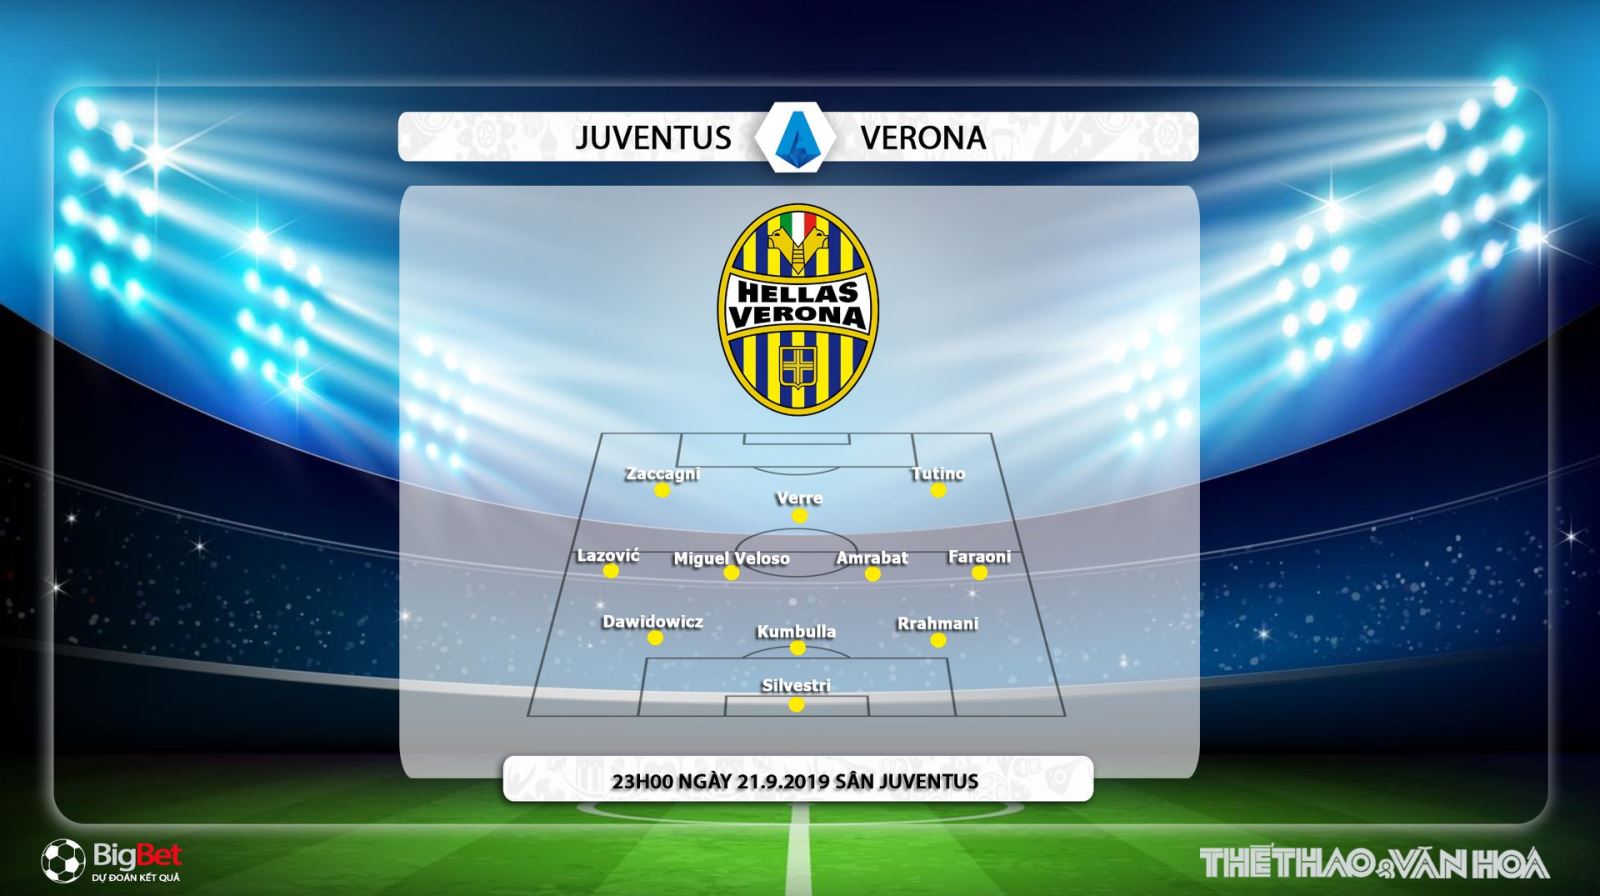 truc tiep bong da hôm nay, FPT play, Juventus đấu với Verona, trực tiếp bóng đá, Juventus vs Verona, soi keo bong da, Juventus, xem bóng đá trực tiếp, Serie A